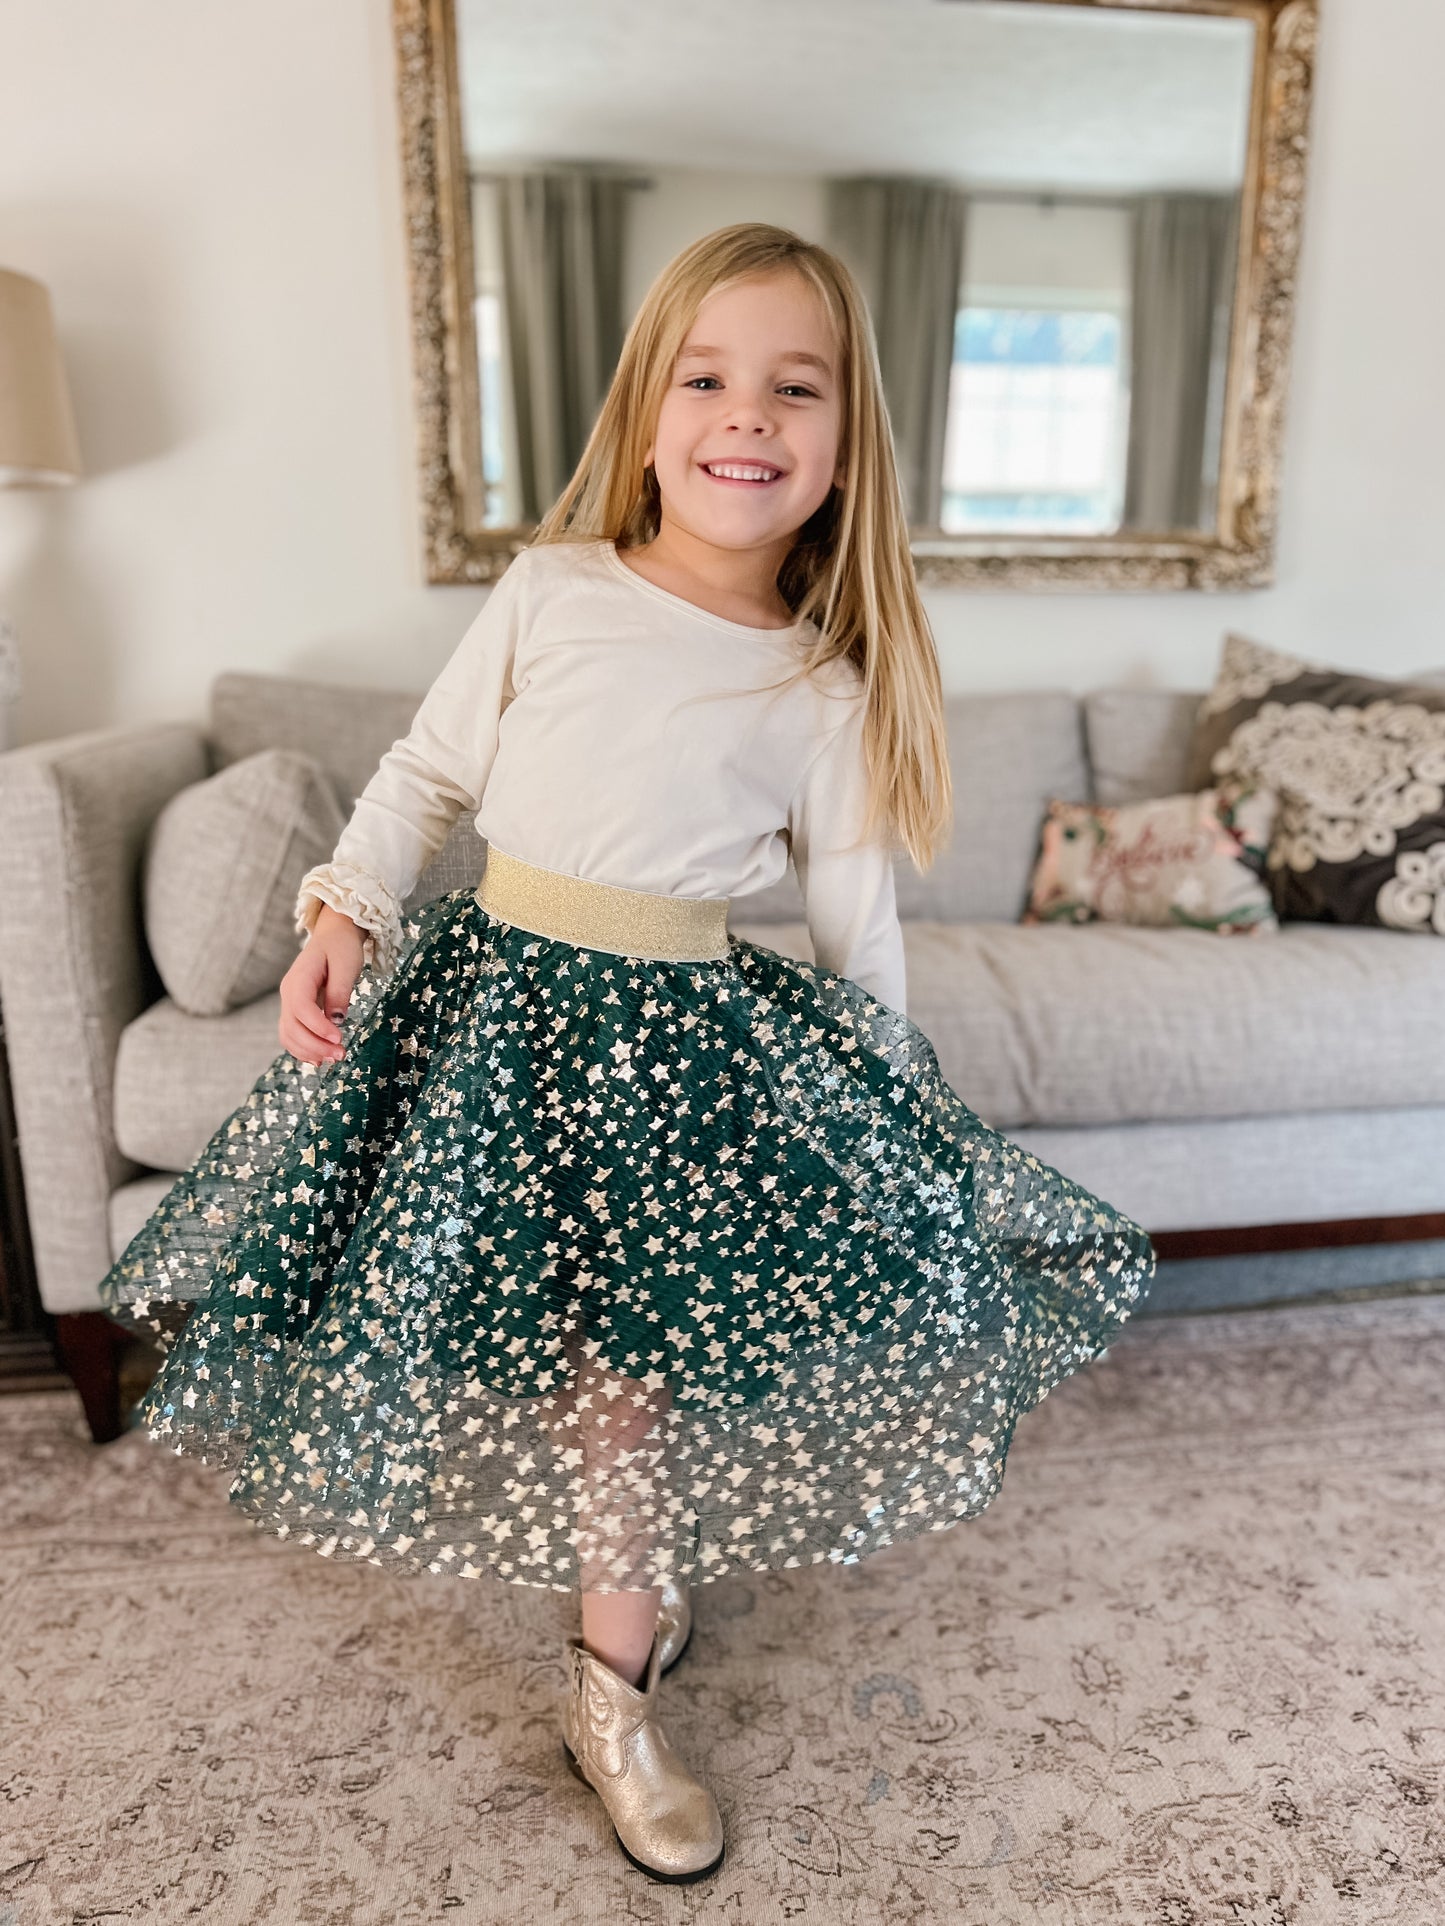 Enchanted Overlay Skirt (Childrens)